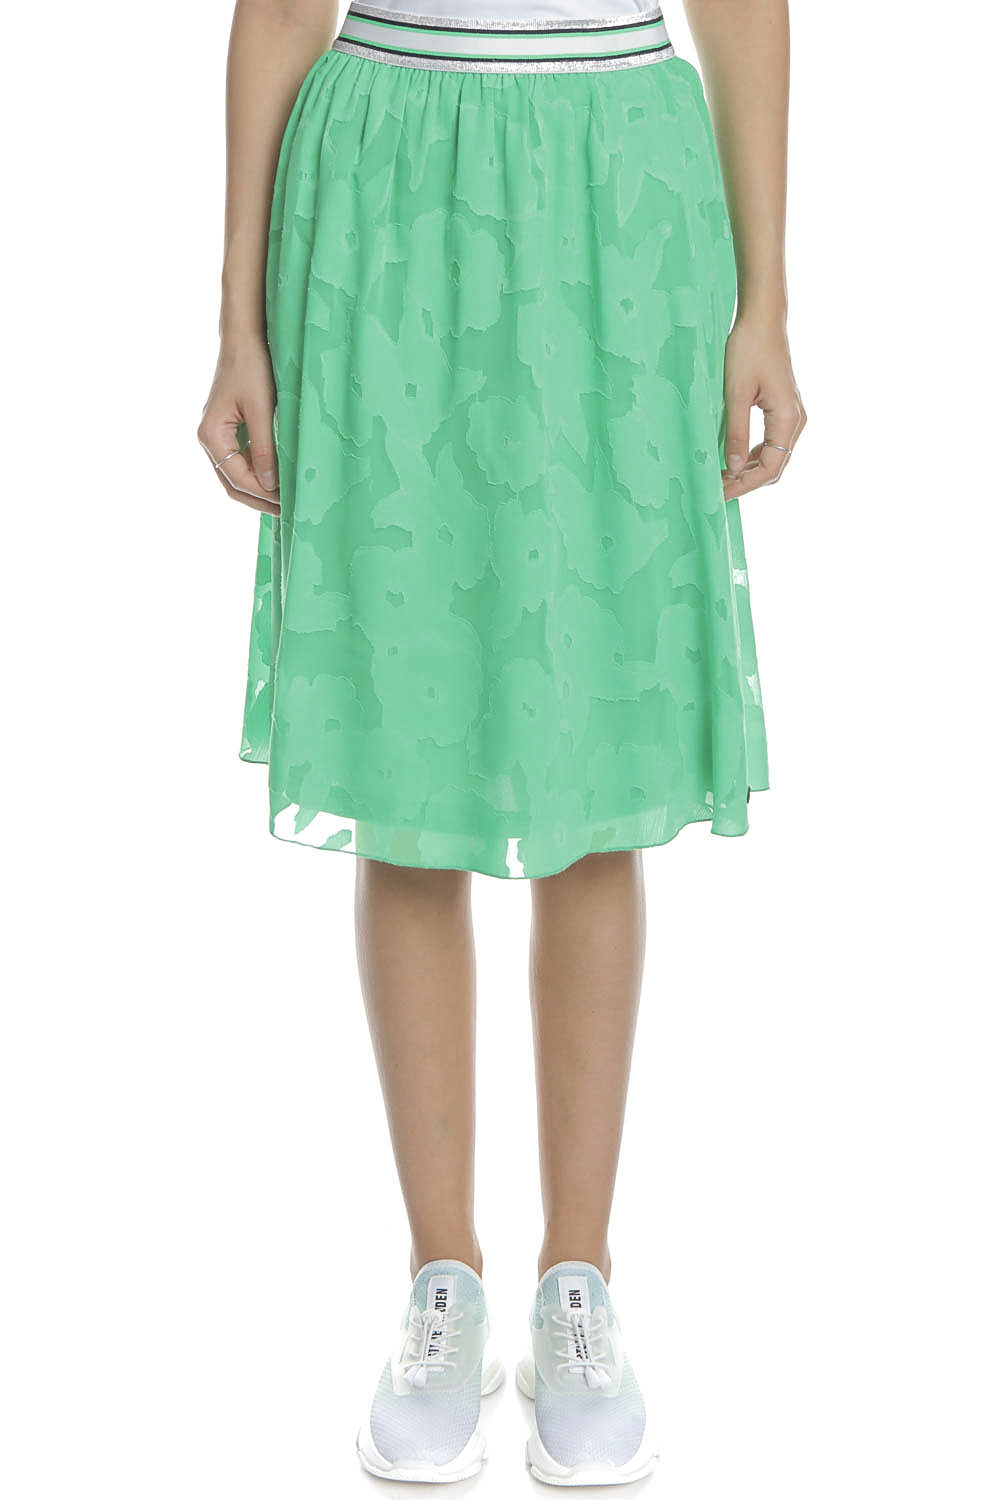 Γυναικεία/Ρούχα/Φούστες/Μέχρι το γόνατο GARCIA JEANS - Γυναικεία midi φούστα GARCIA JEANS πράσινη